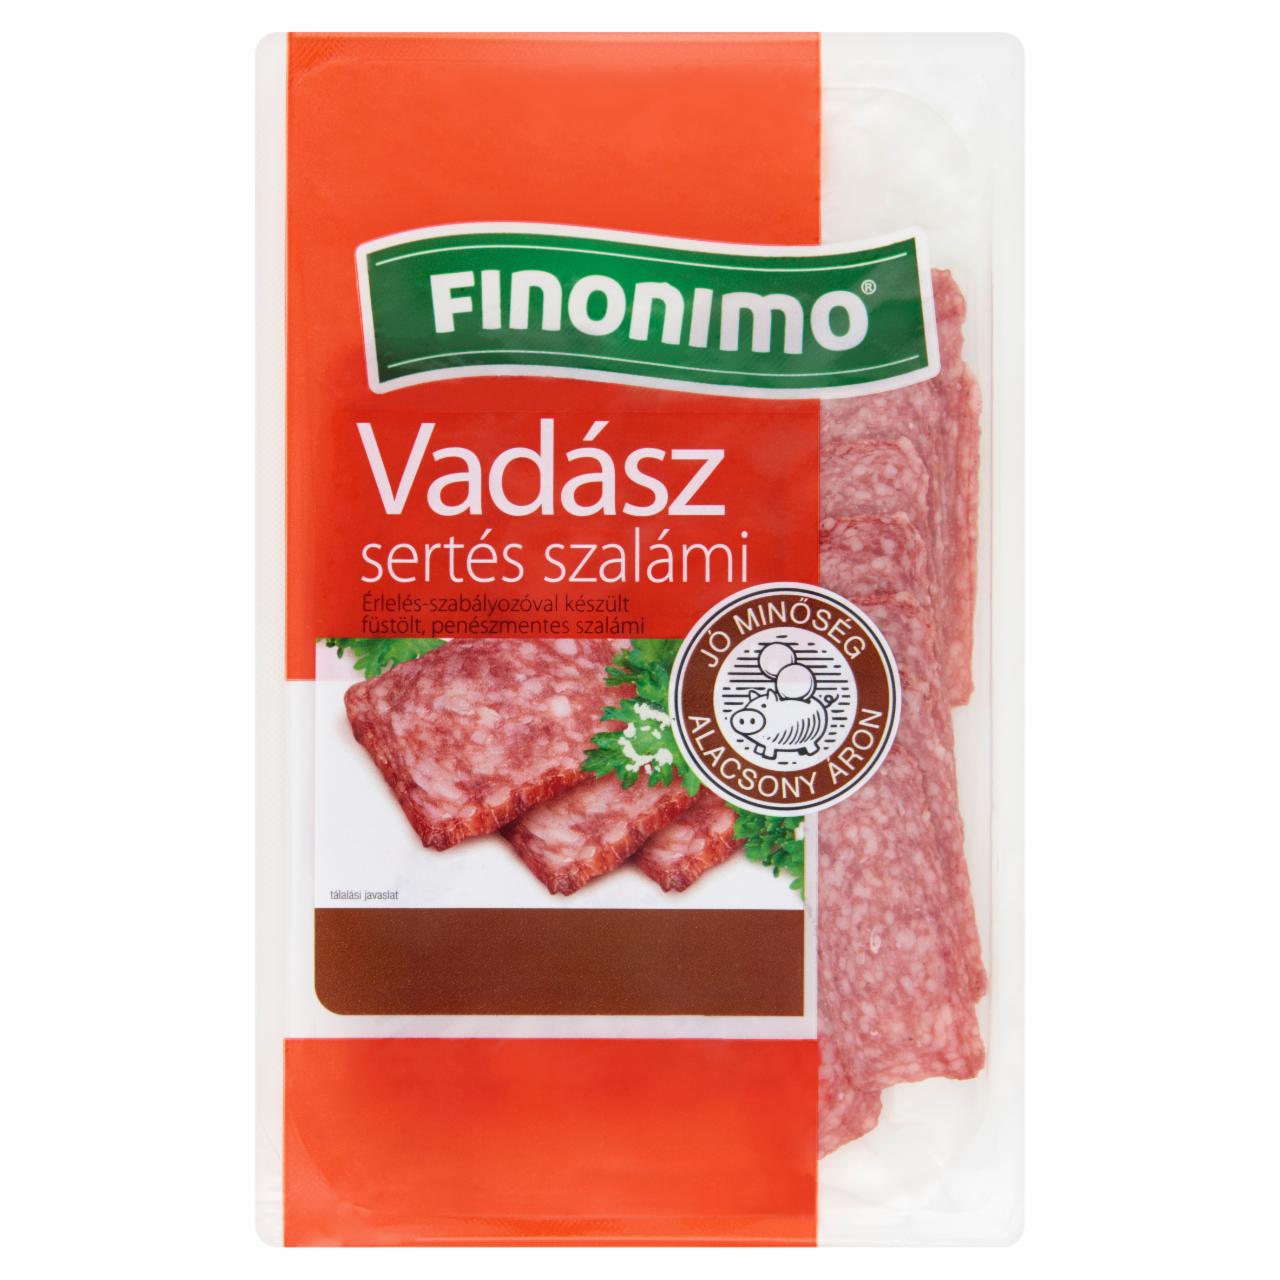 Képek - Finonimo Vadász szeletelt sertés szalámi 75 g